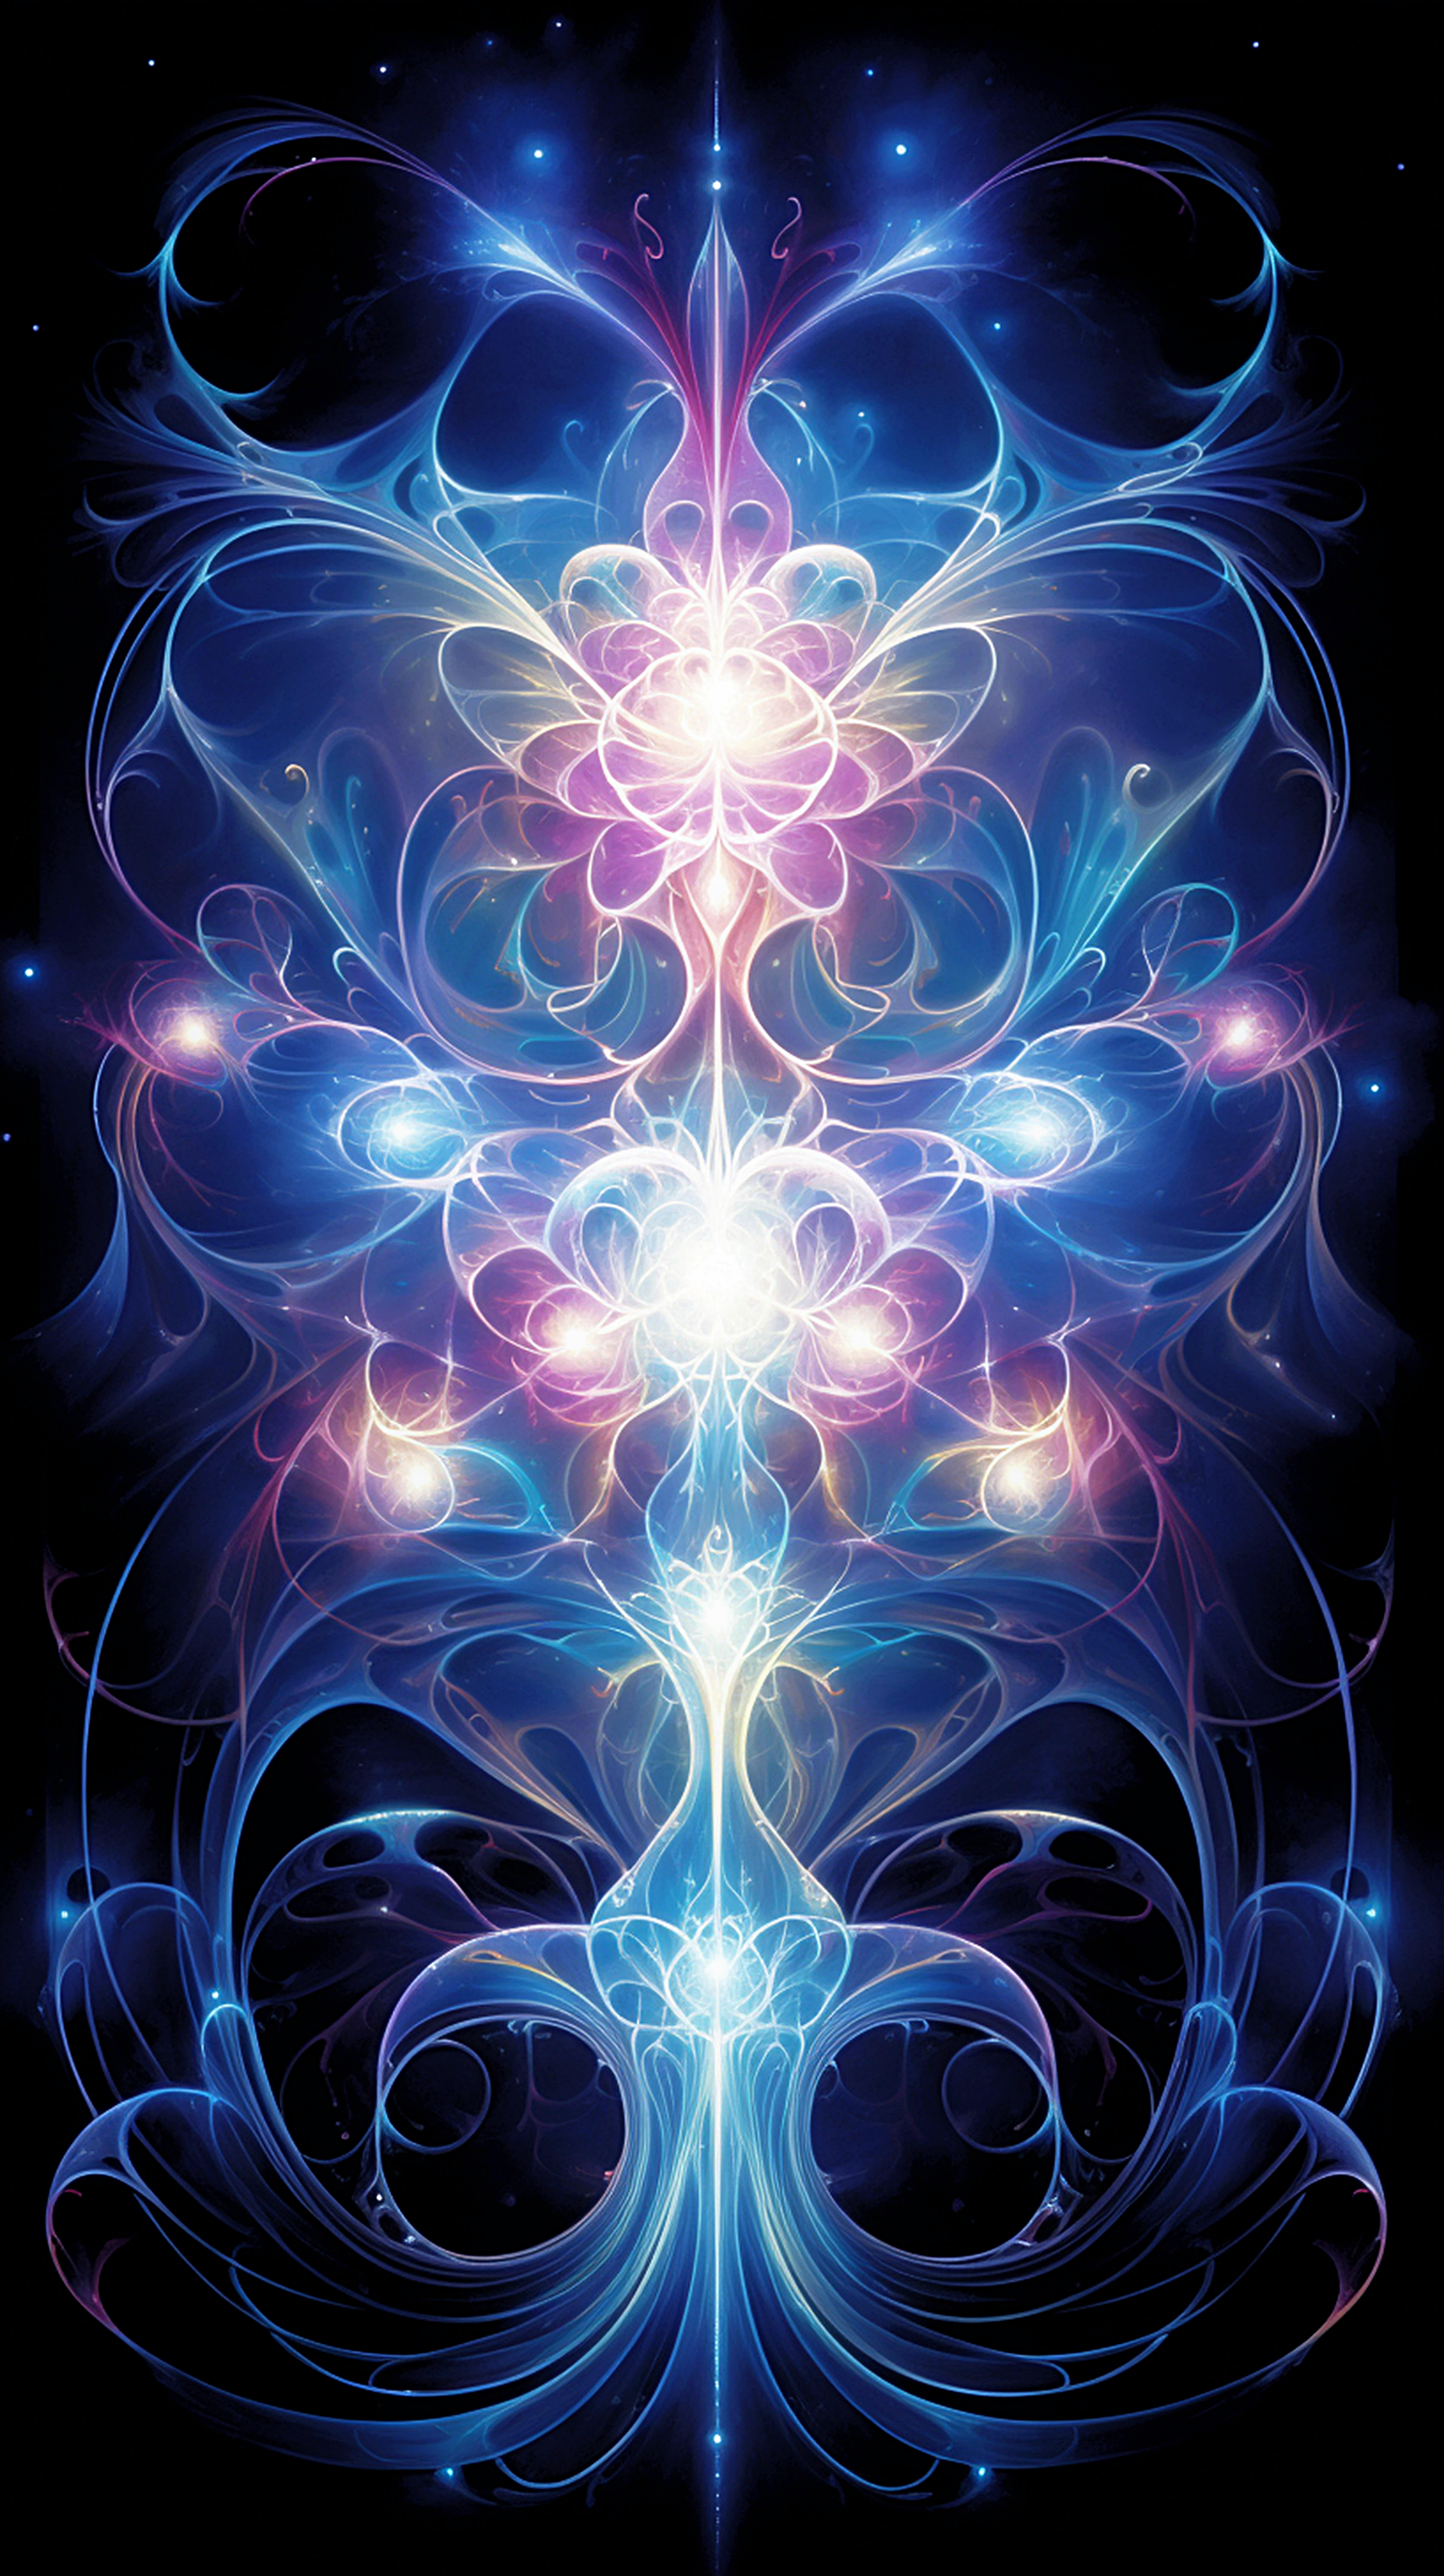 Digital illustration af lodret og vandret symmetri